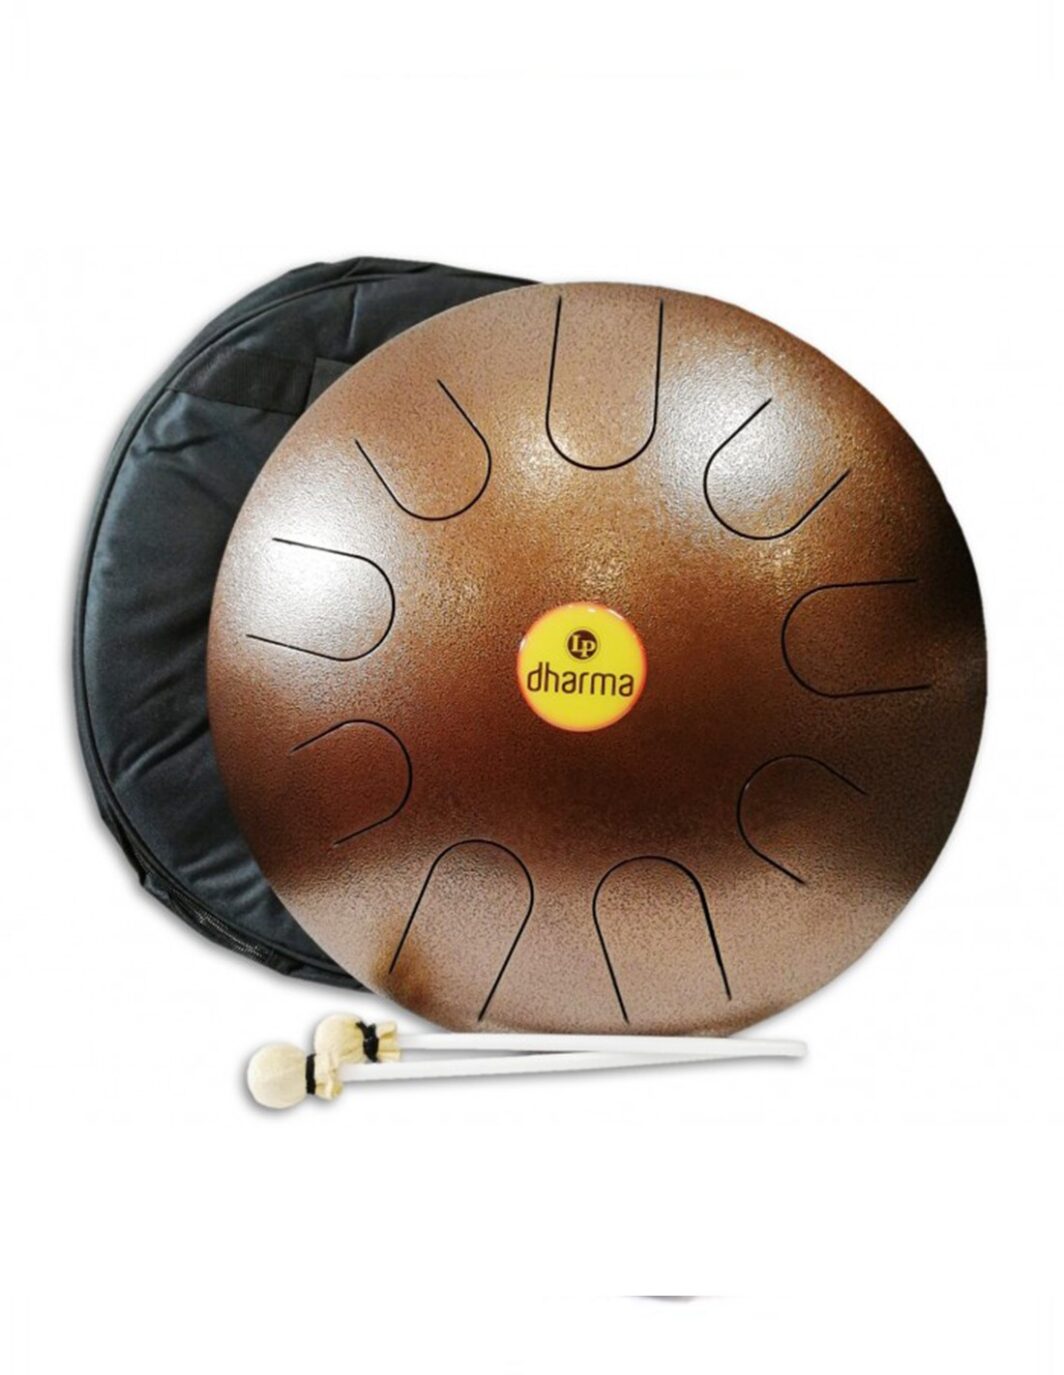 LP DHARMA METTA DRUM 16"steel drum con bacchette